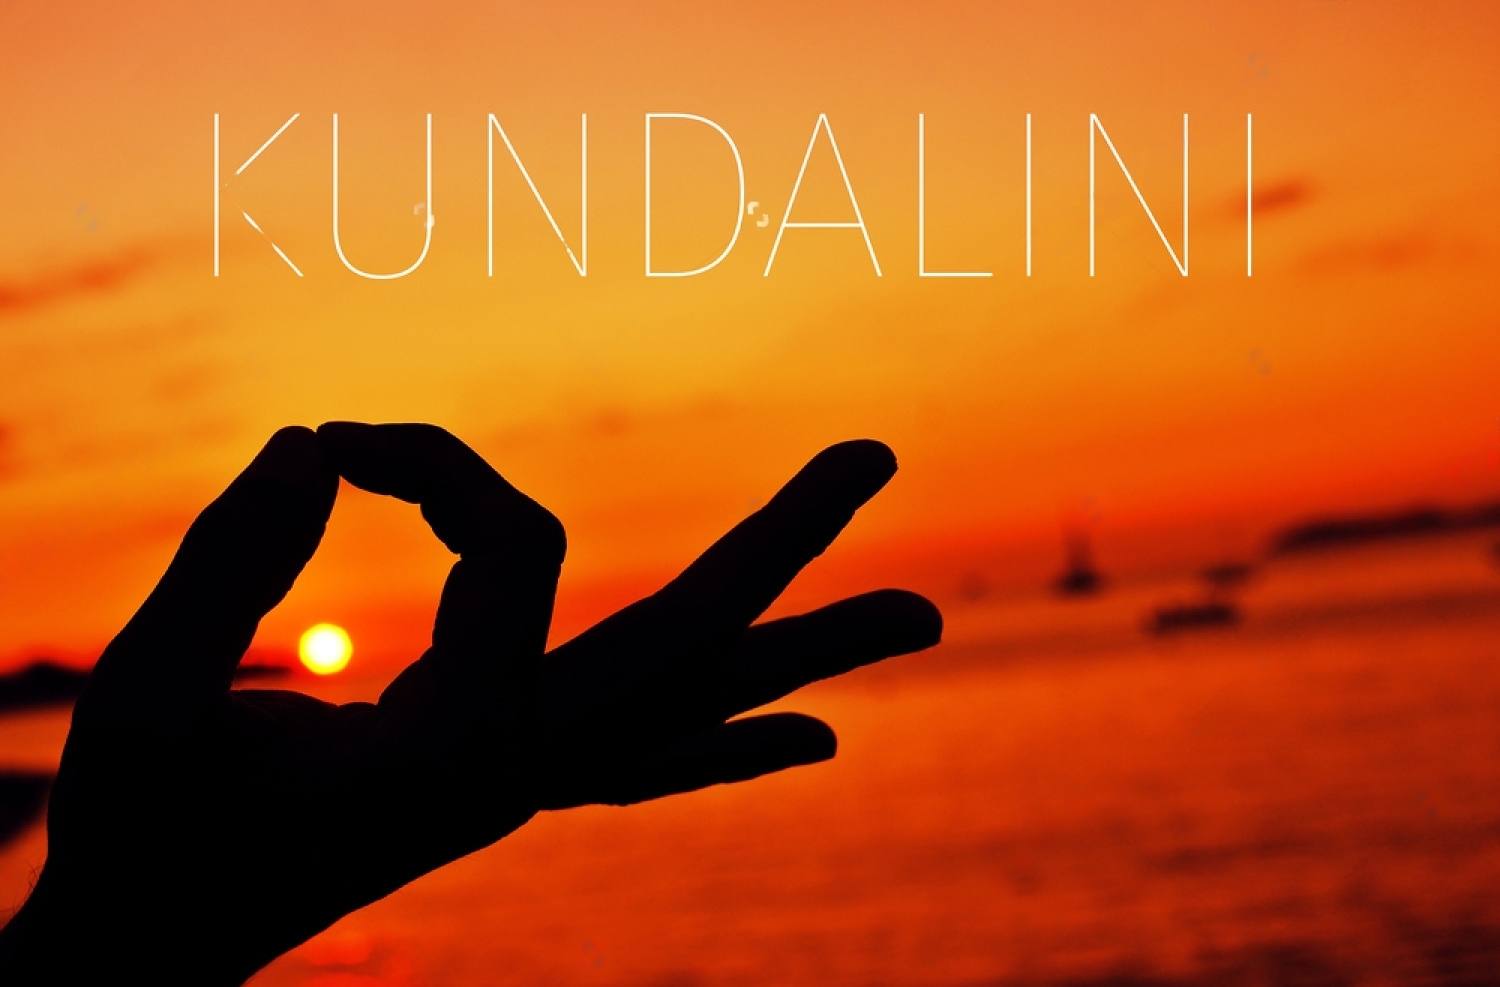 Kundalini yoga teacher courses